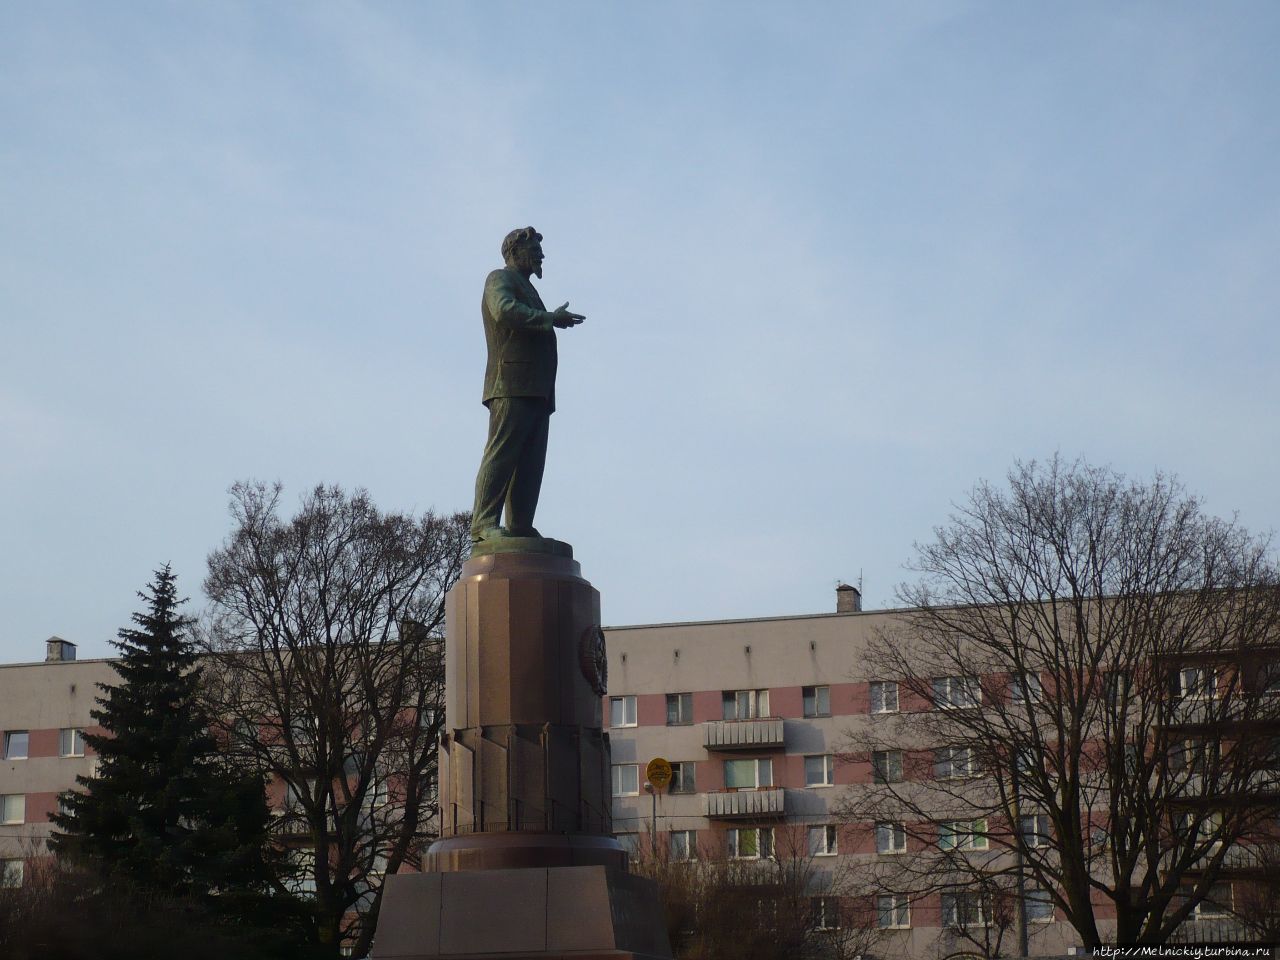 Памятник М.И. Калинину / Monument to M.I. Kalinin